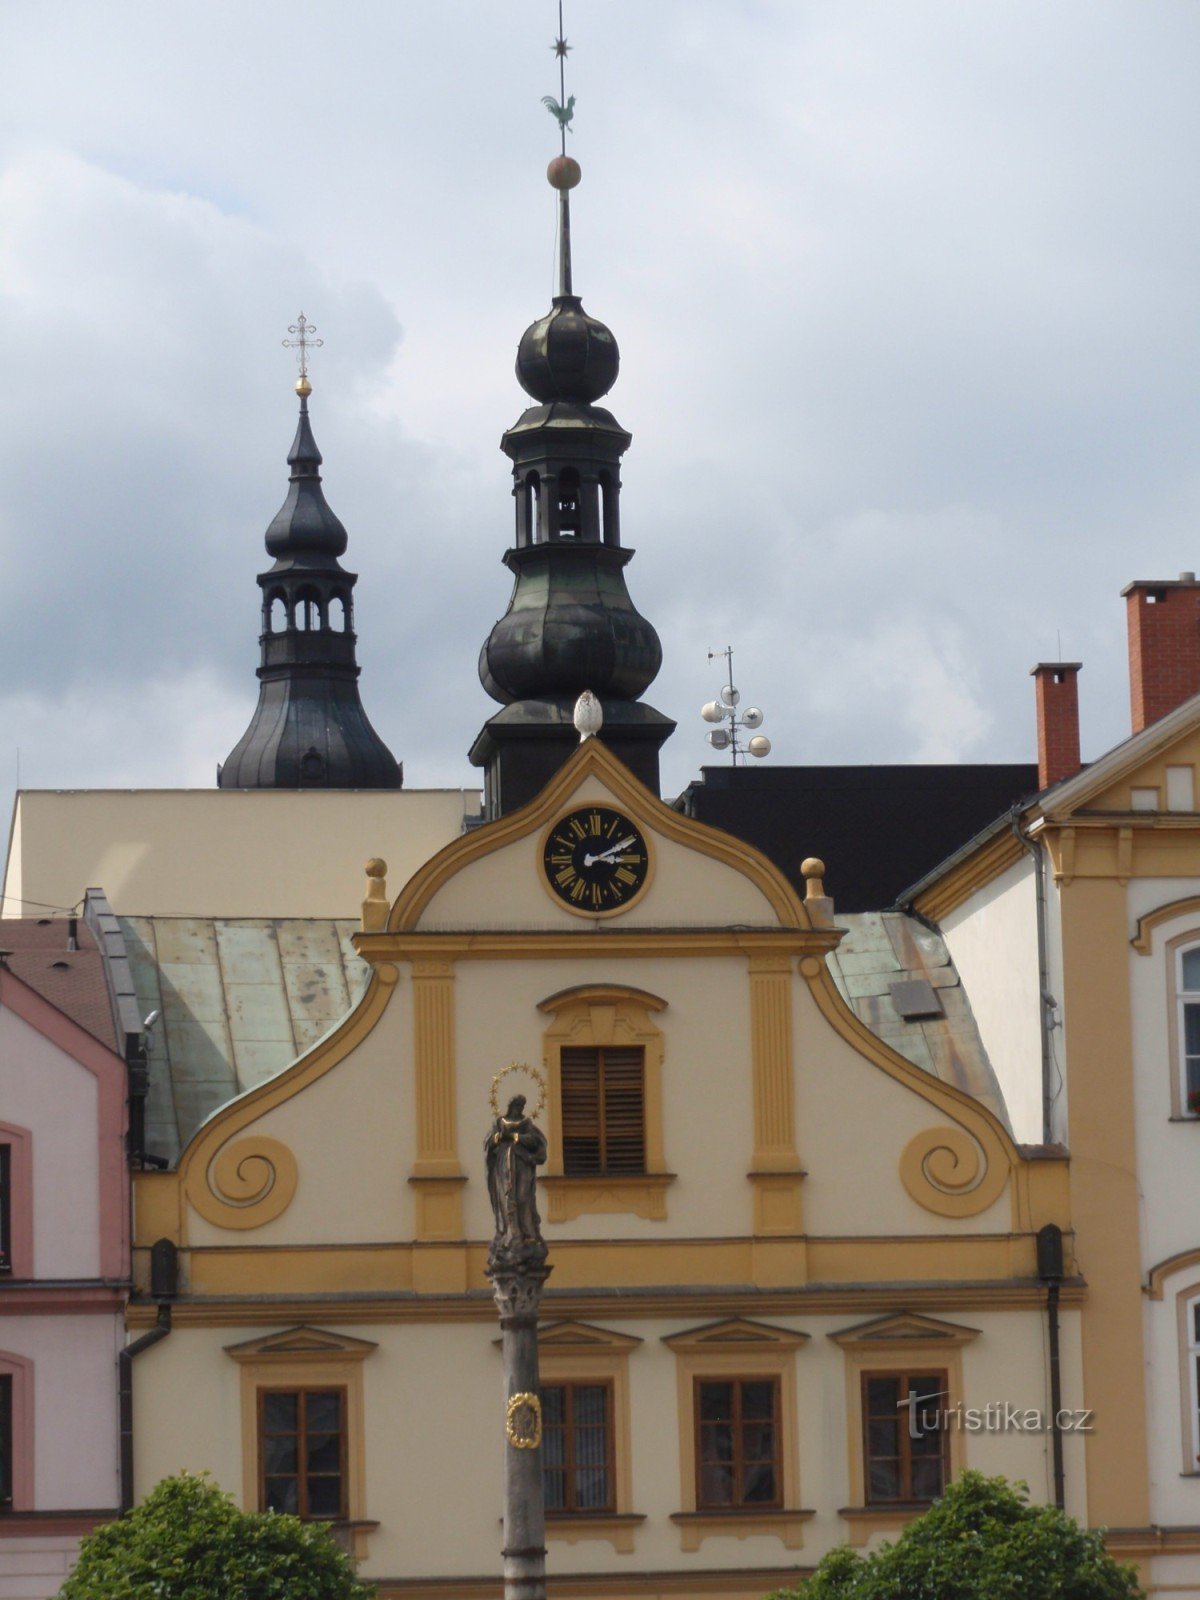 Piccoli monumenti di Česká Třebová